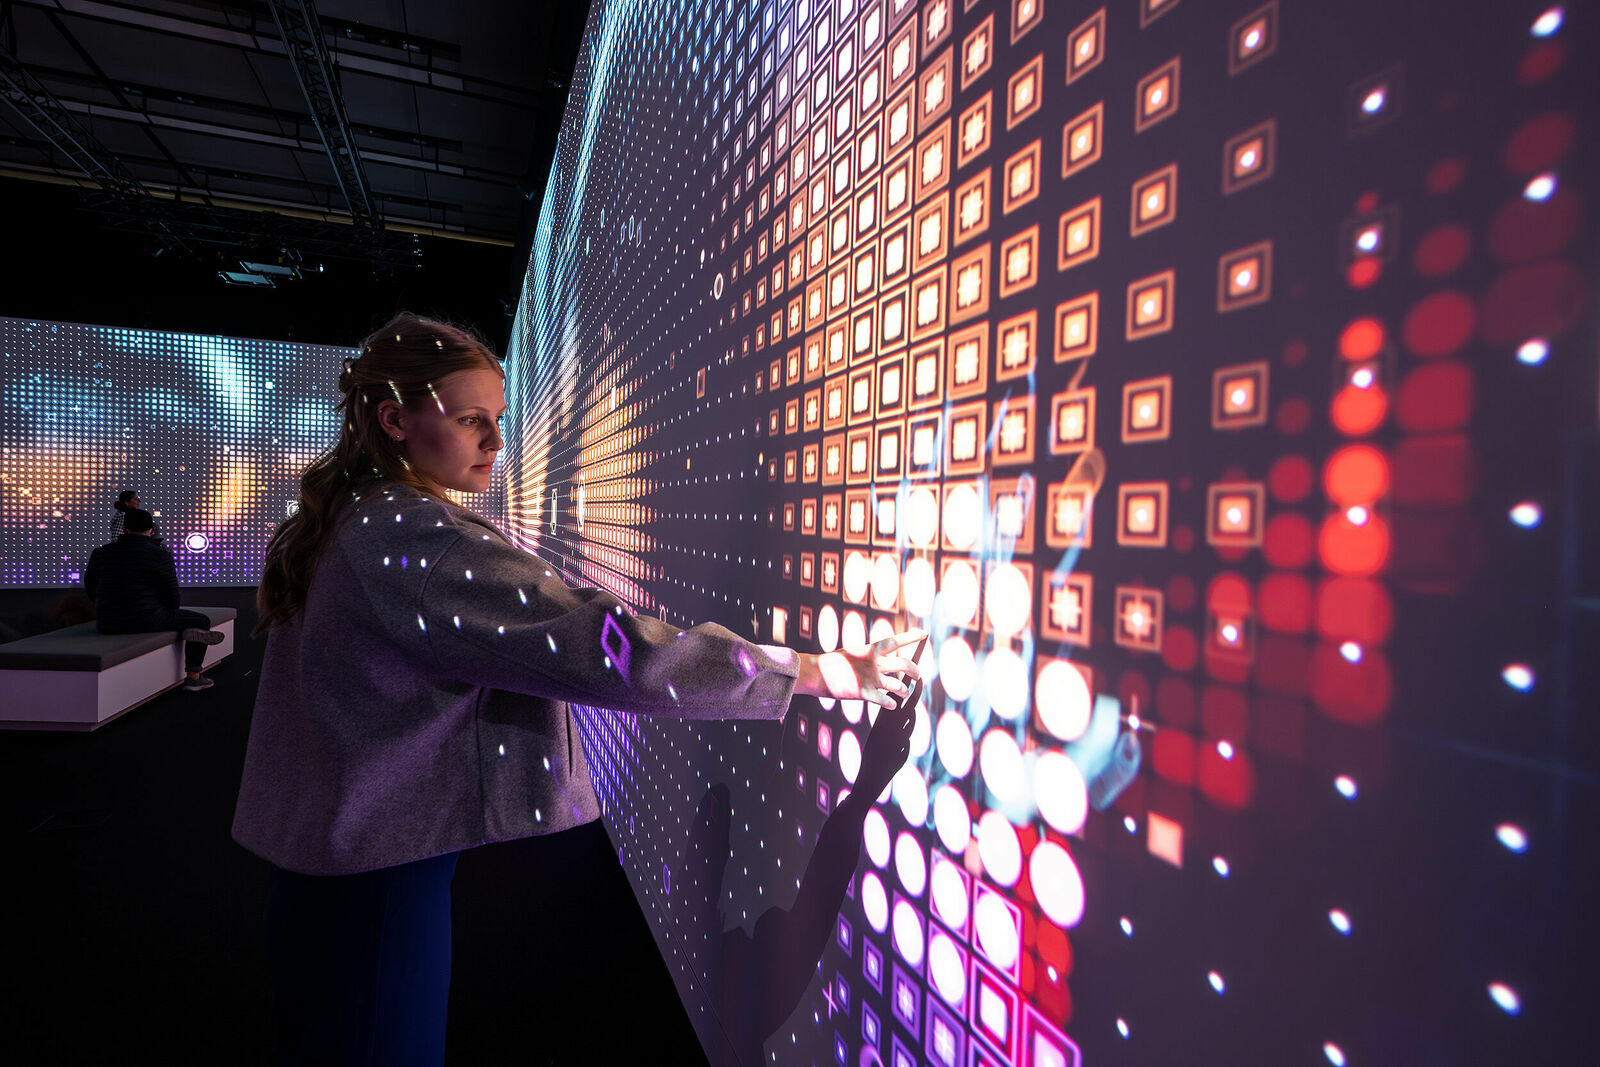 Eine Person interagiert mit einem Wanddisplay, das ein buntes Muster von leuchtenden Quadraten zeigt.